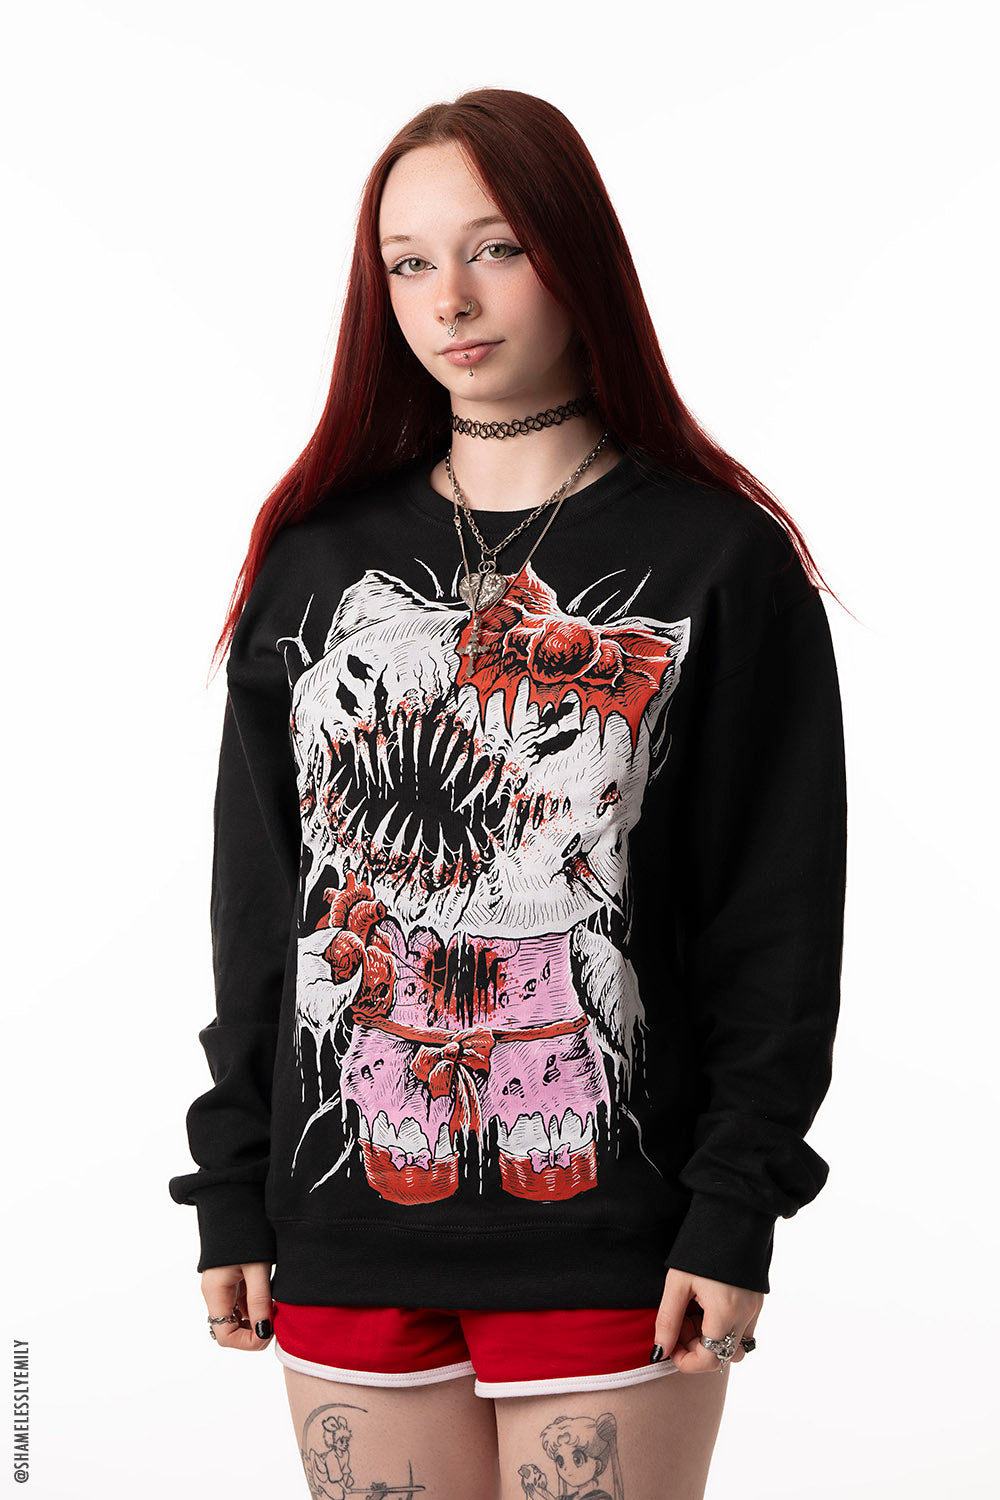 Hell Kitty Sweatshirt